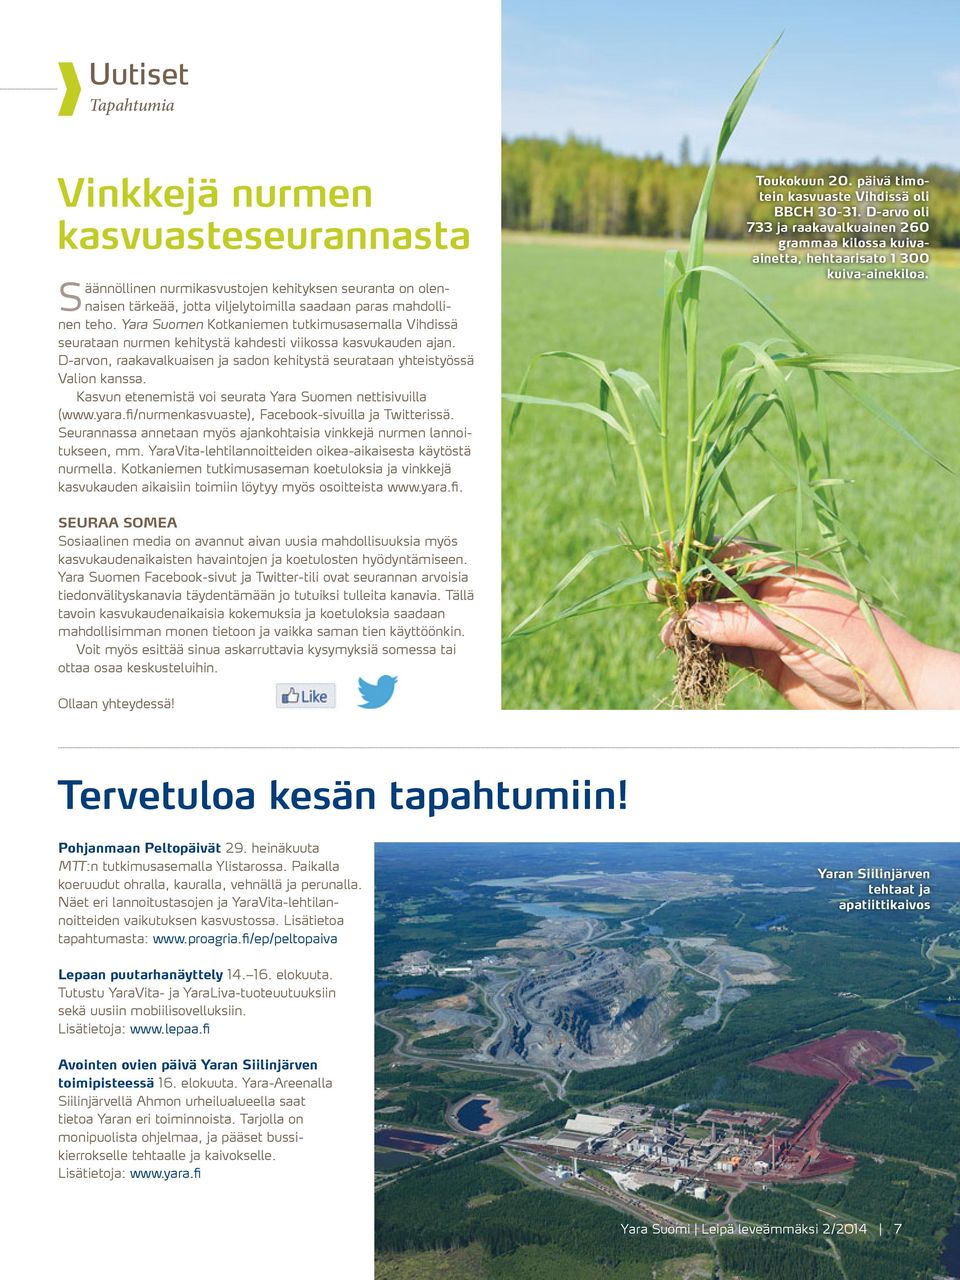 Kasvun etenemistä voi seurata Yara Suomen nettisivuilla (www.yara.fi/nurmenkasvuaste), Facebook-sivuilla ja Twitterissä. Seurannassa annetaan myös ajankohtaisia vinkkejä nurmen lannoitukseen, mm.